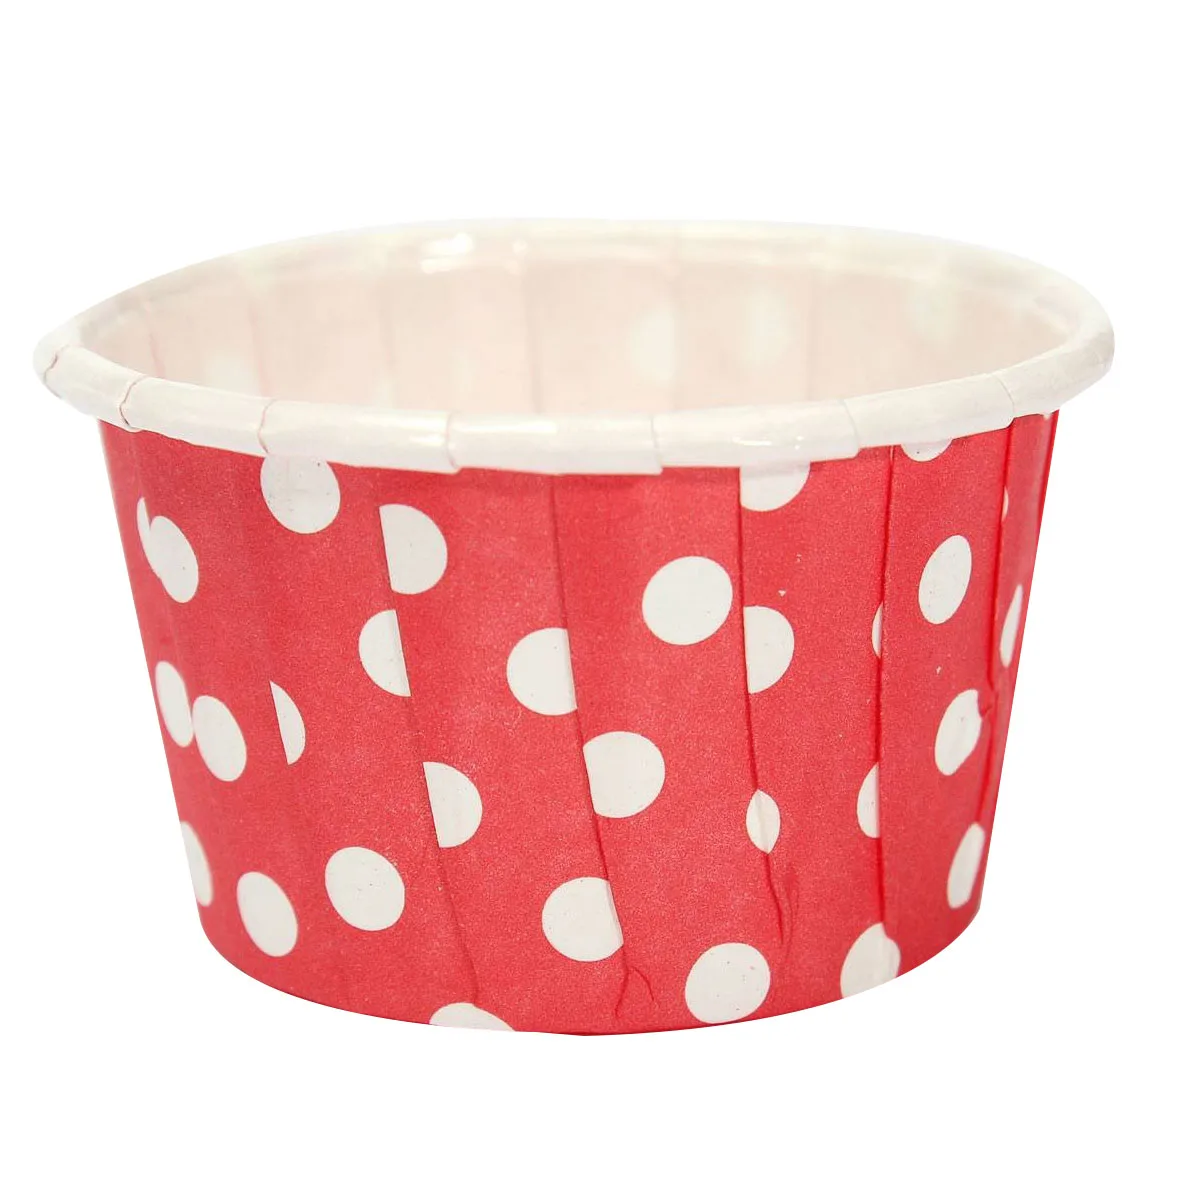 20 штук Бумага красный обертка для кексов бумага для формы торта бумажная формочка для выпечки формы для выпечки десертов